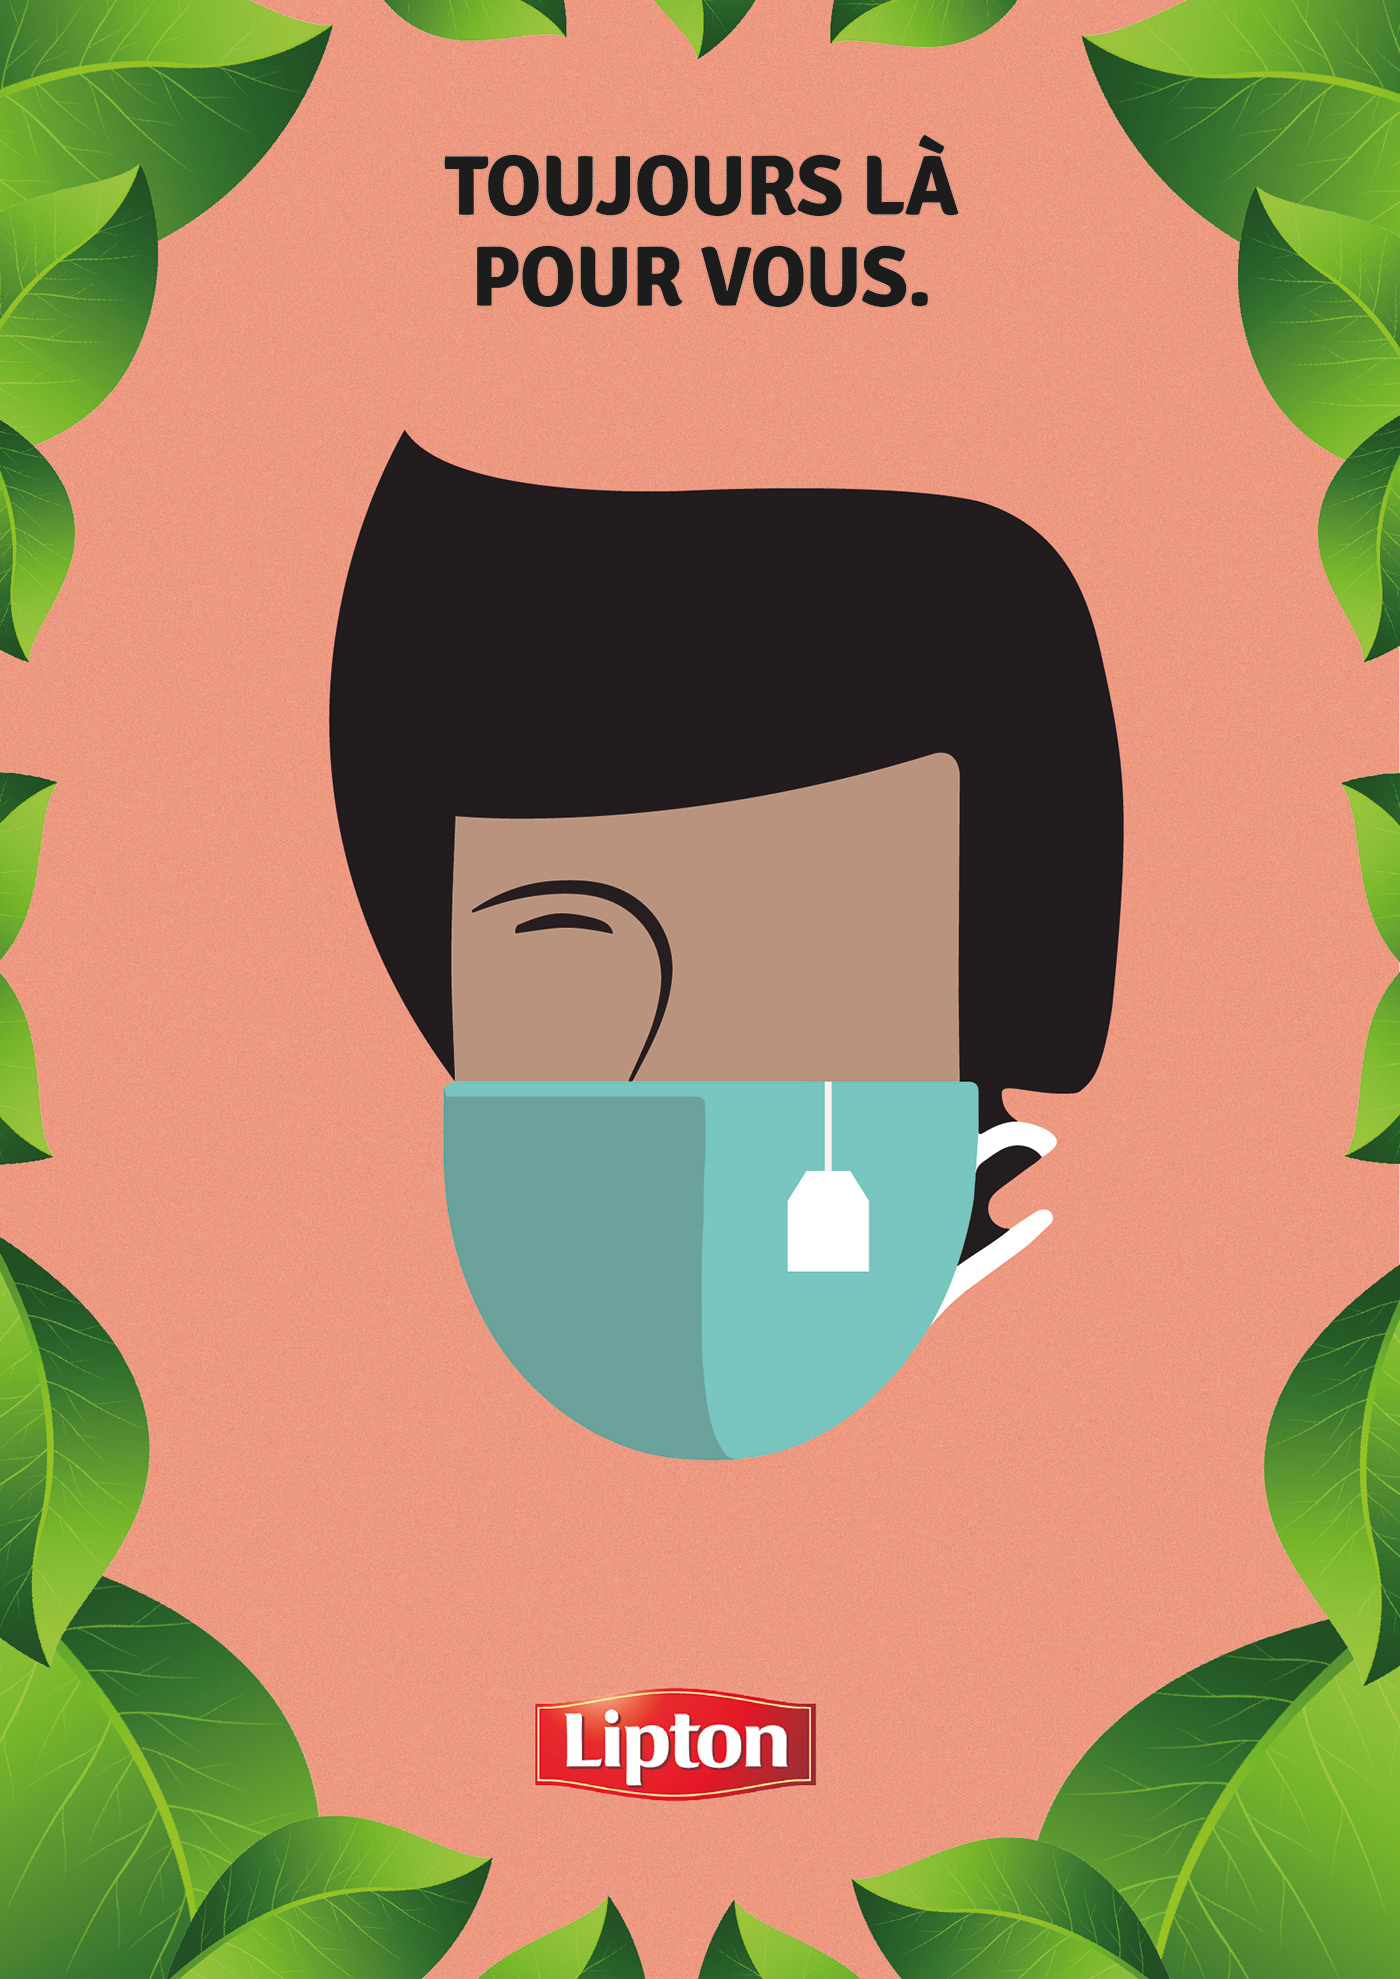 Coronavirus cup of tea Diversity Face mask green tea ILLUSTRATION  Lipton multiracial portraits tea